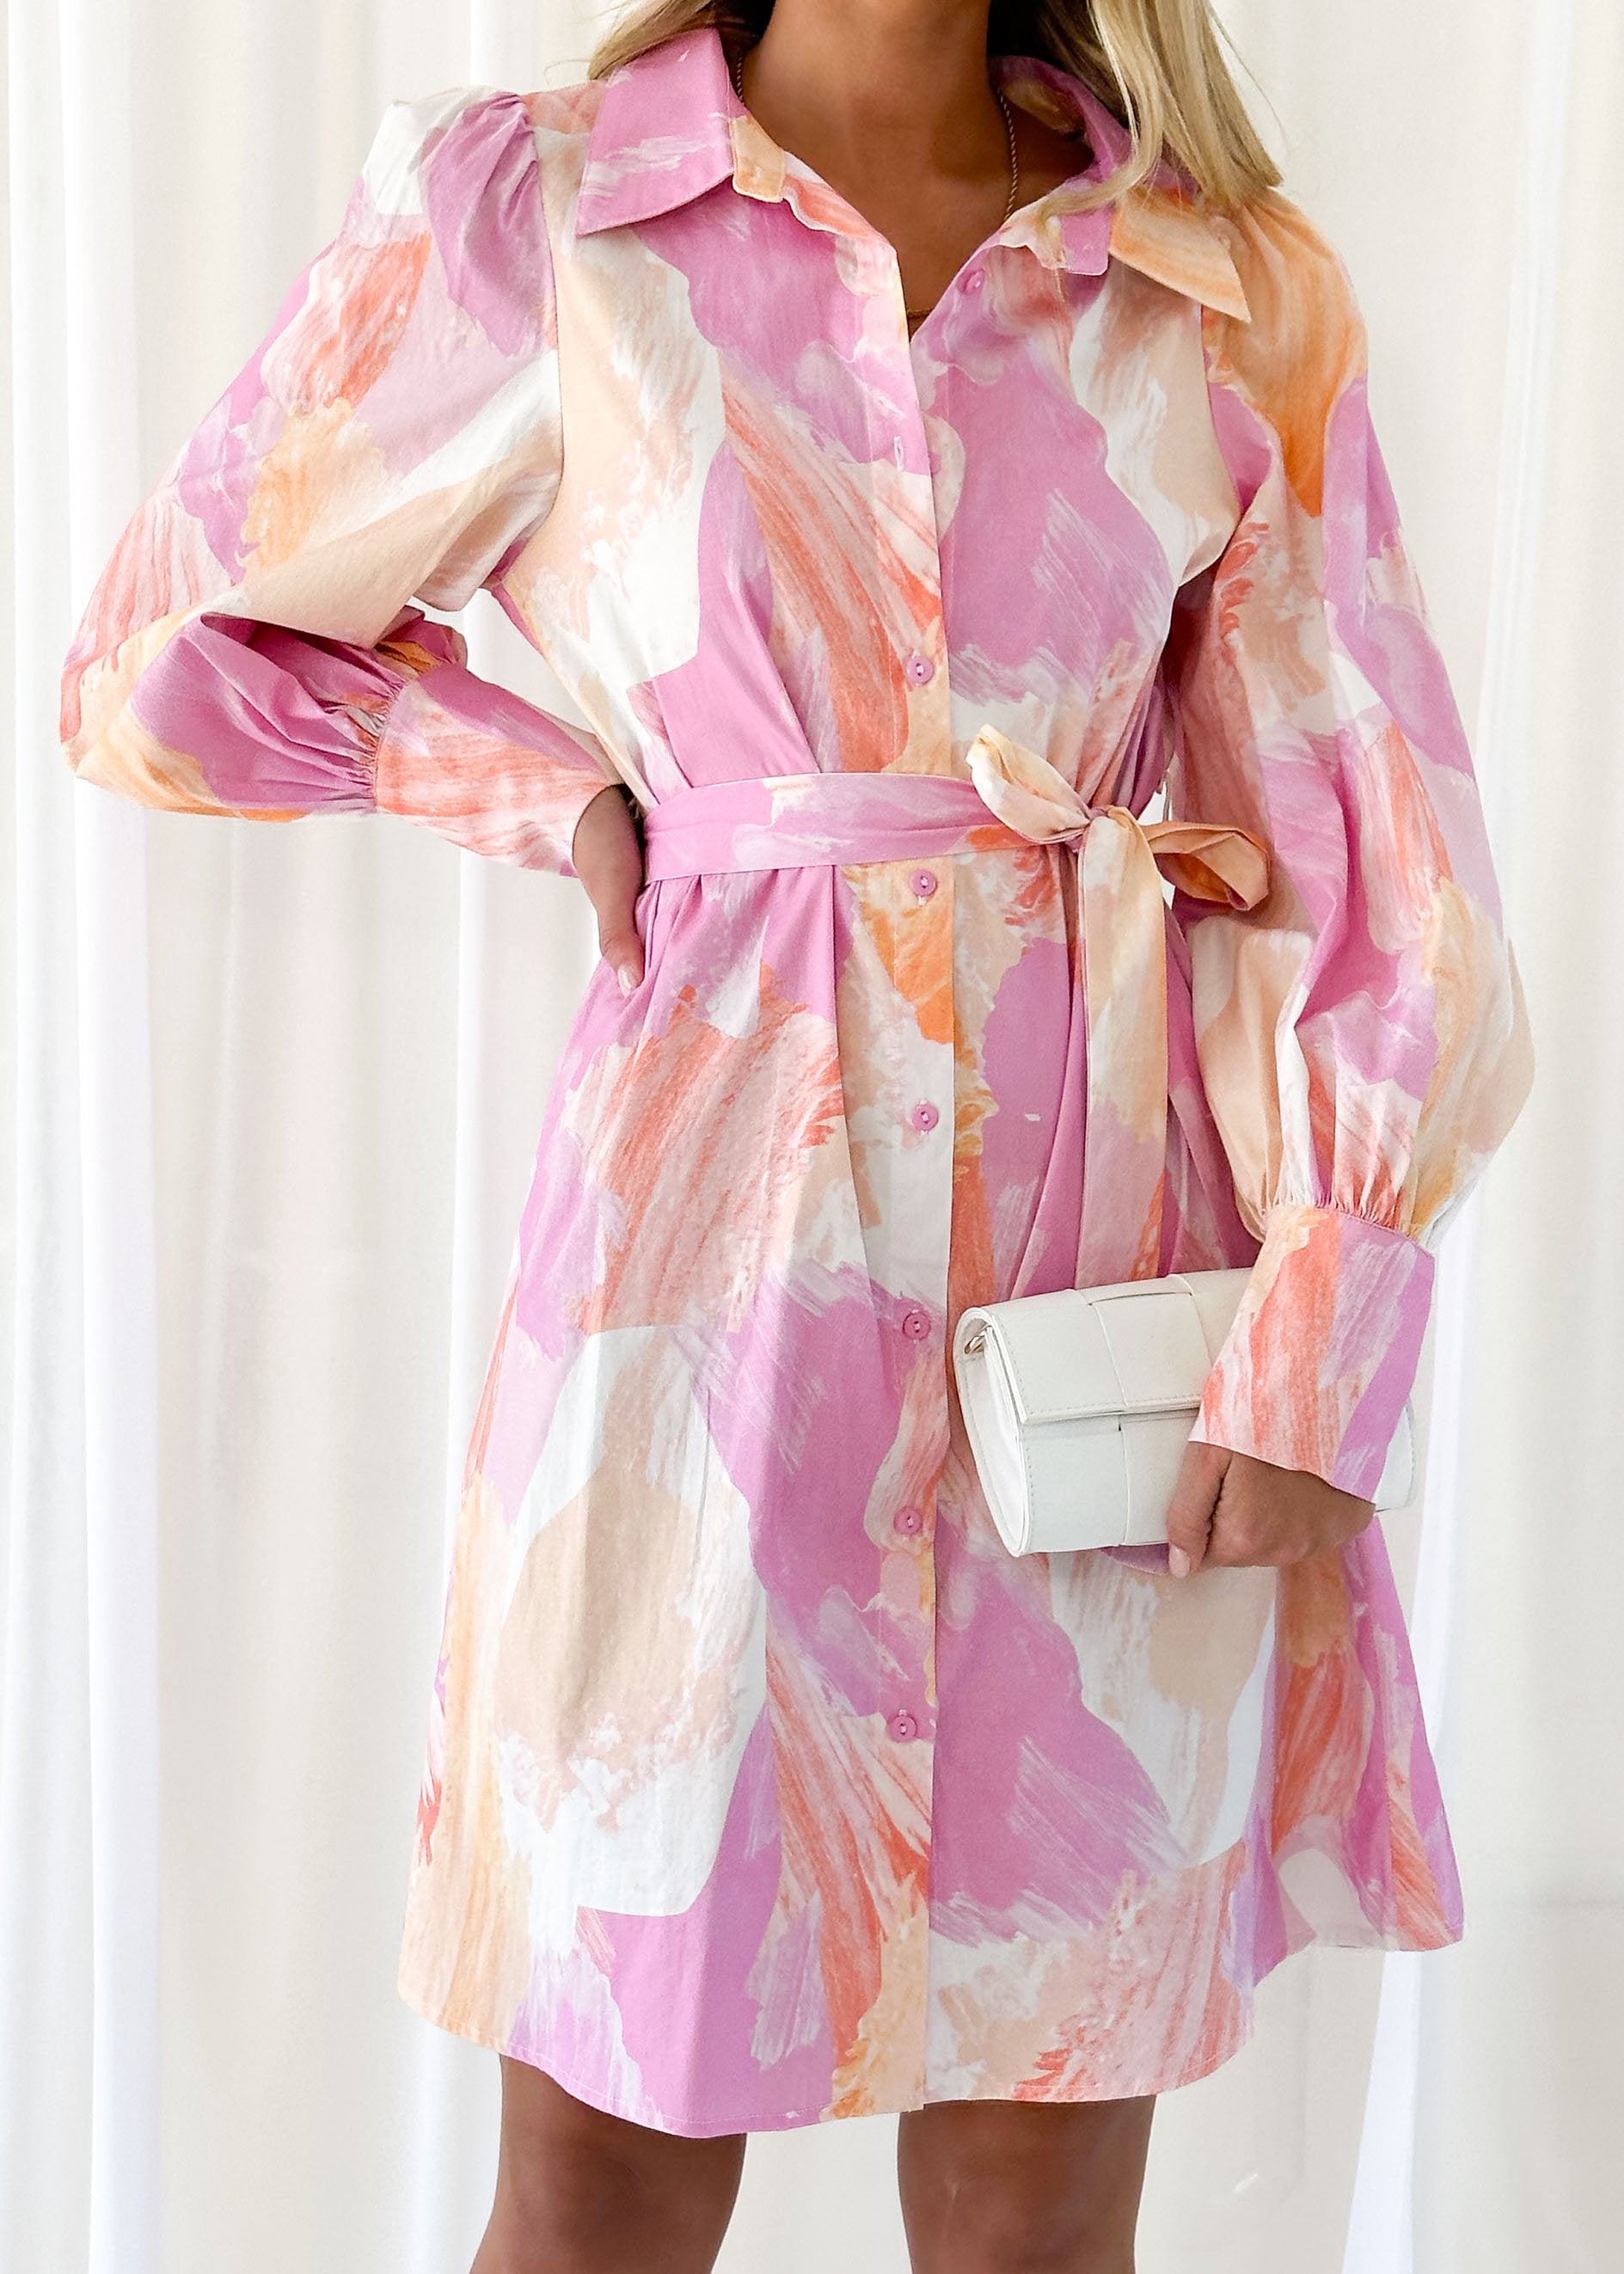 Minervena Dress - Pink Splash